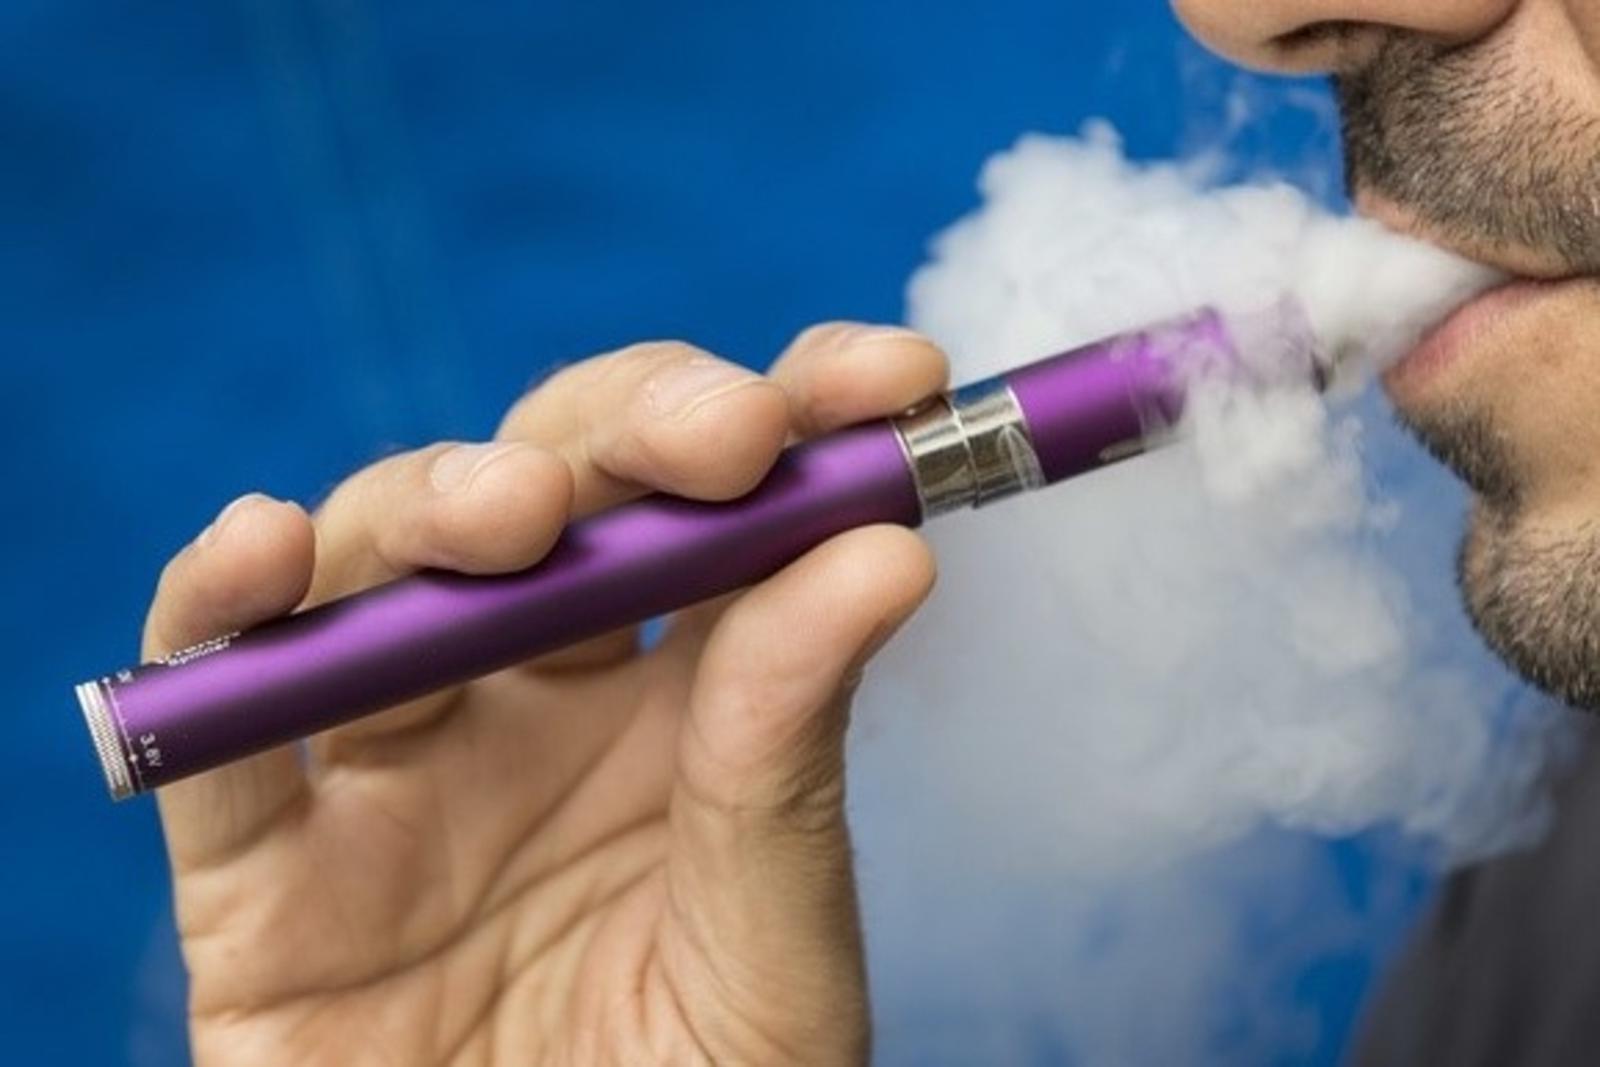 L'OMS tire la sonnette d'alarme contre l'e-cigarette et veut une réglementation sévère